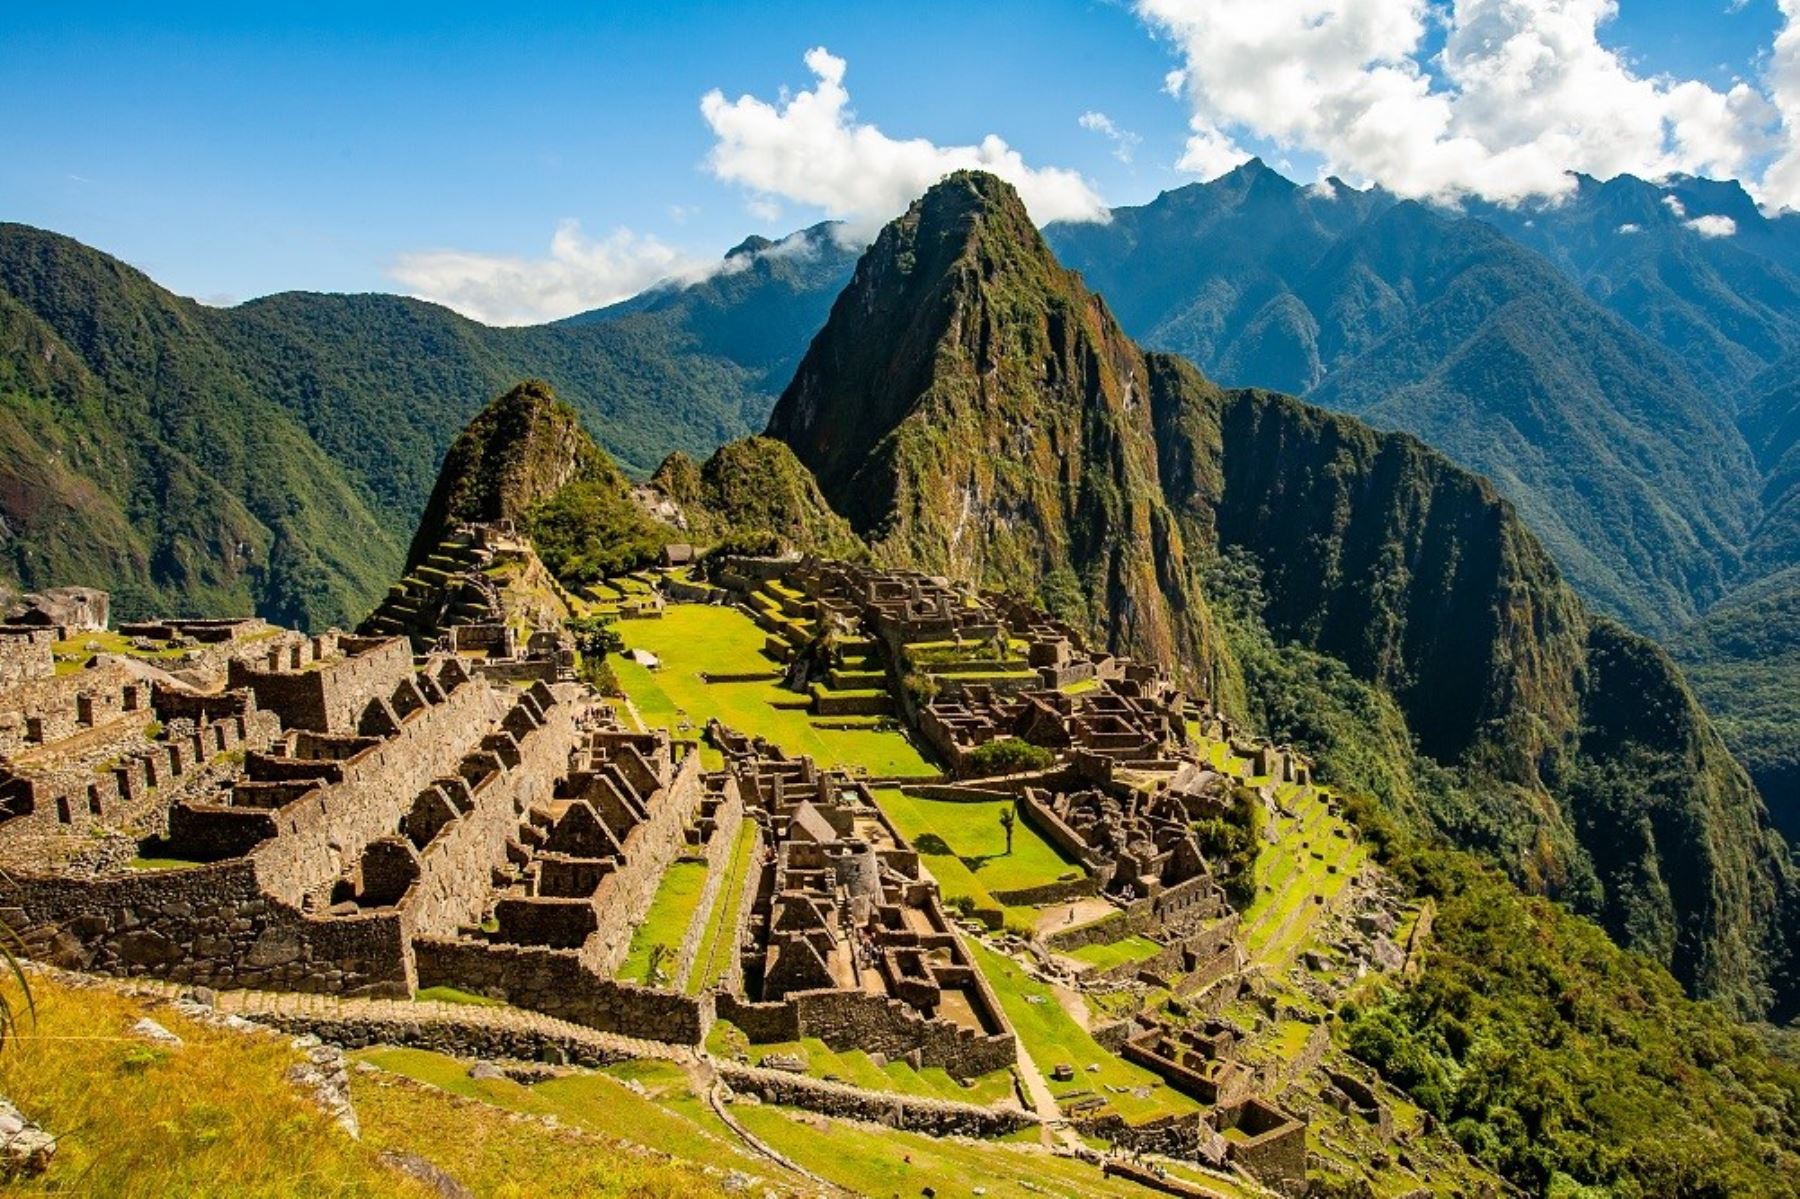 Los premios World Travel Awards distinguió a Machu Picchu como el mejor destino turístico de Sudamérica 2022.